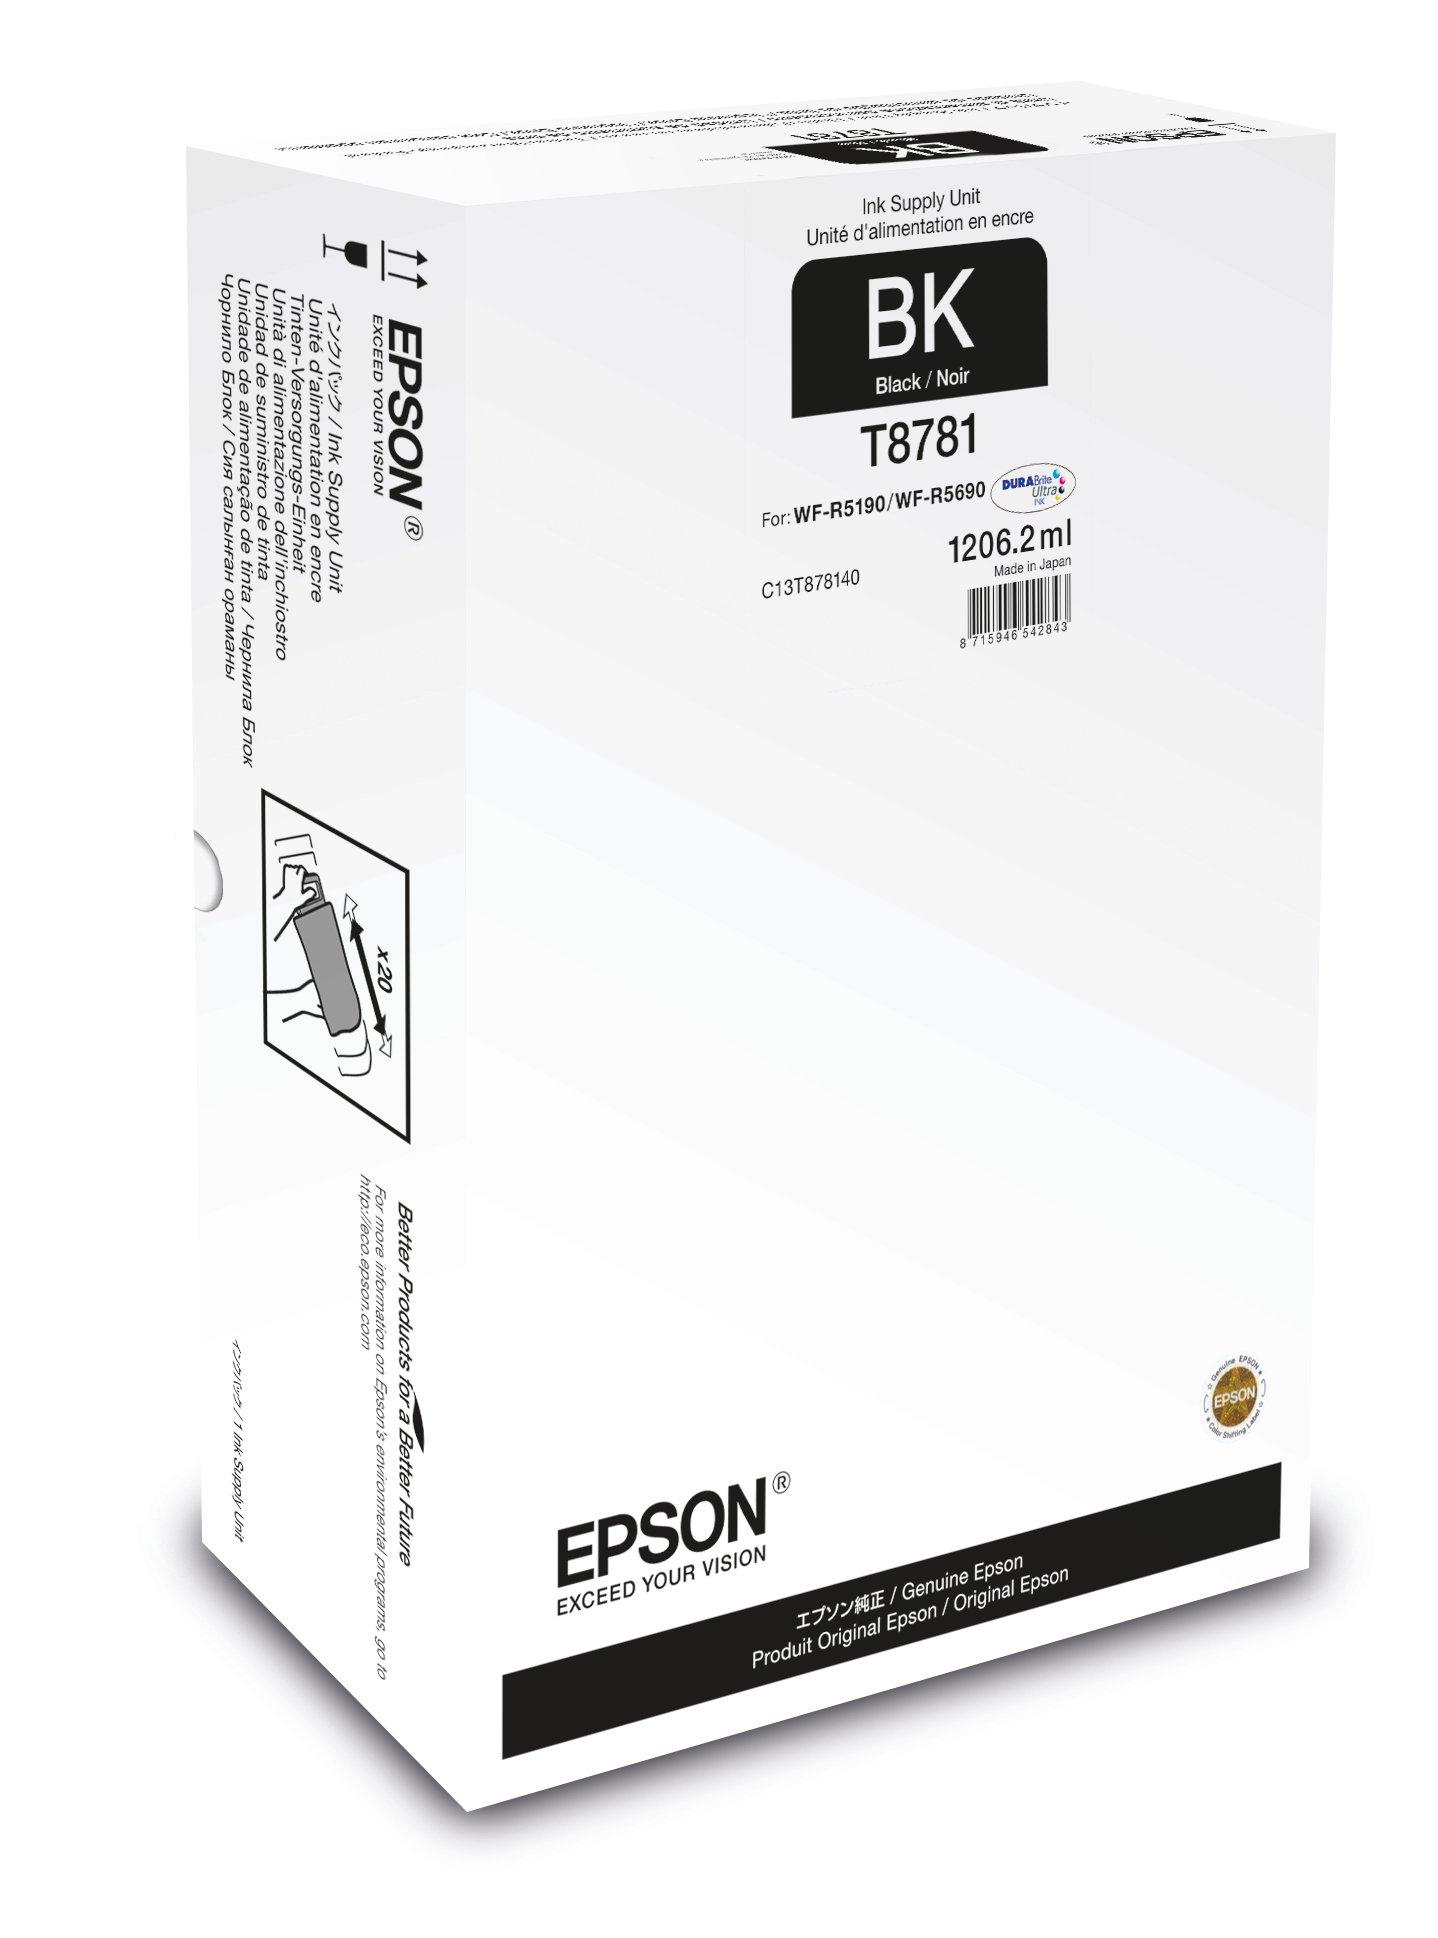 Black Xxl Ink Supply Unit Inkoustový Spotřební Materiál Inkoust And Papír Produkty Epson 1100